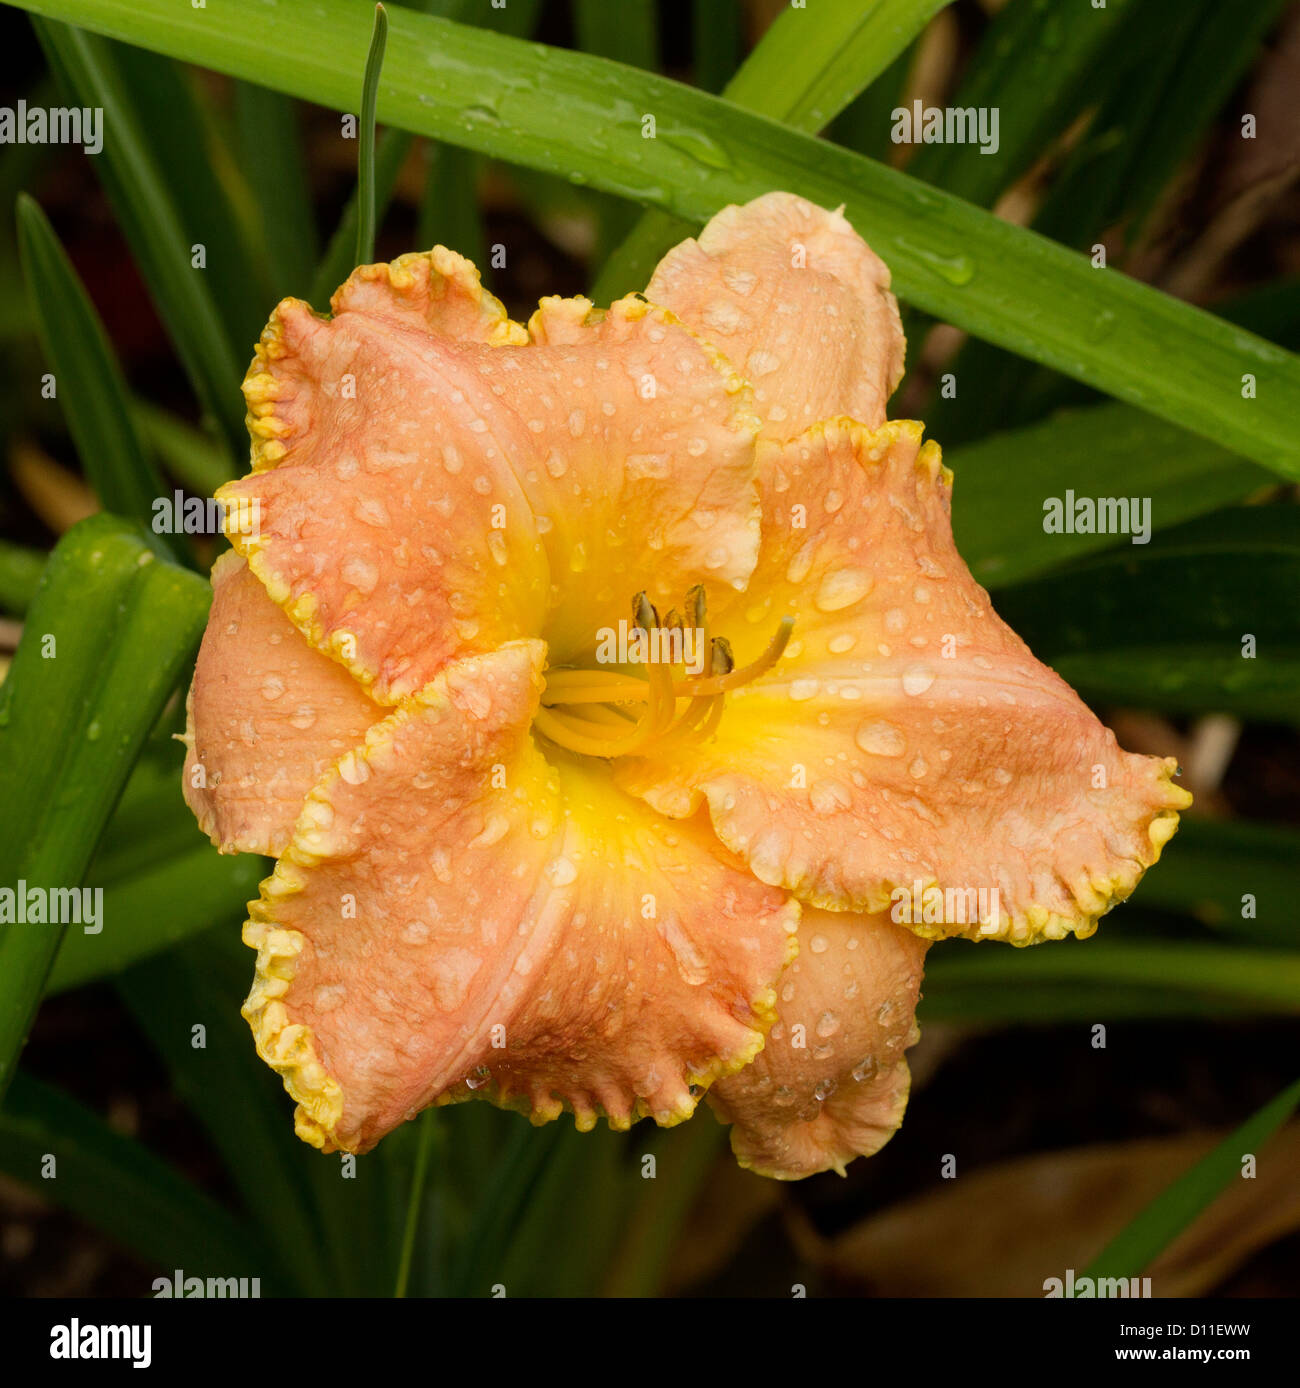 Abricot et froufrous jaune bordé de fleurs Hemerocallis 'Rushing Delight' - l'hémérocalle -avec gouttes de pluie sur les pétales et feuillages Banque D'Images